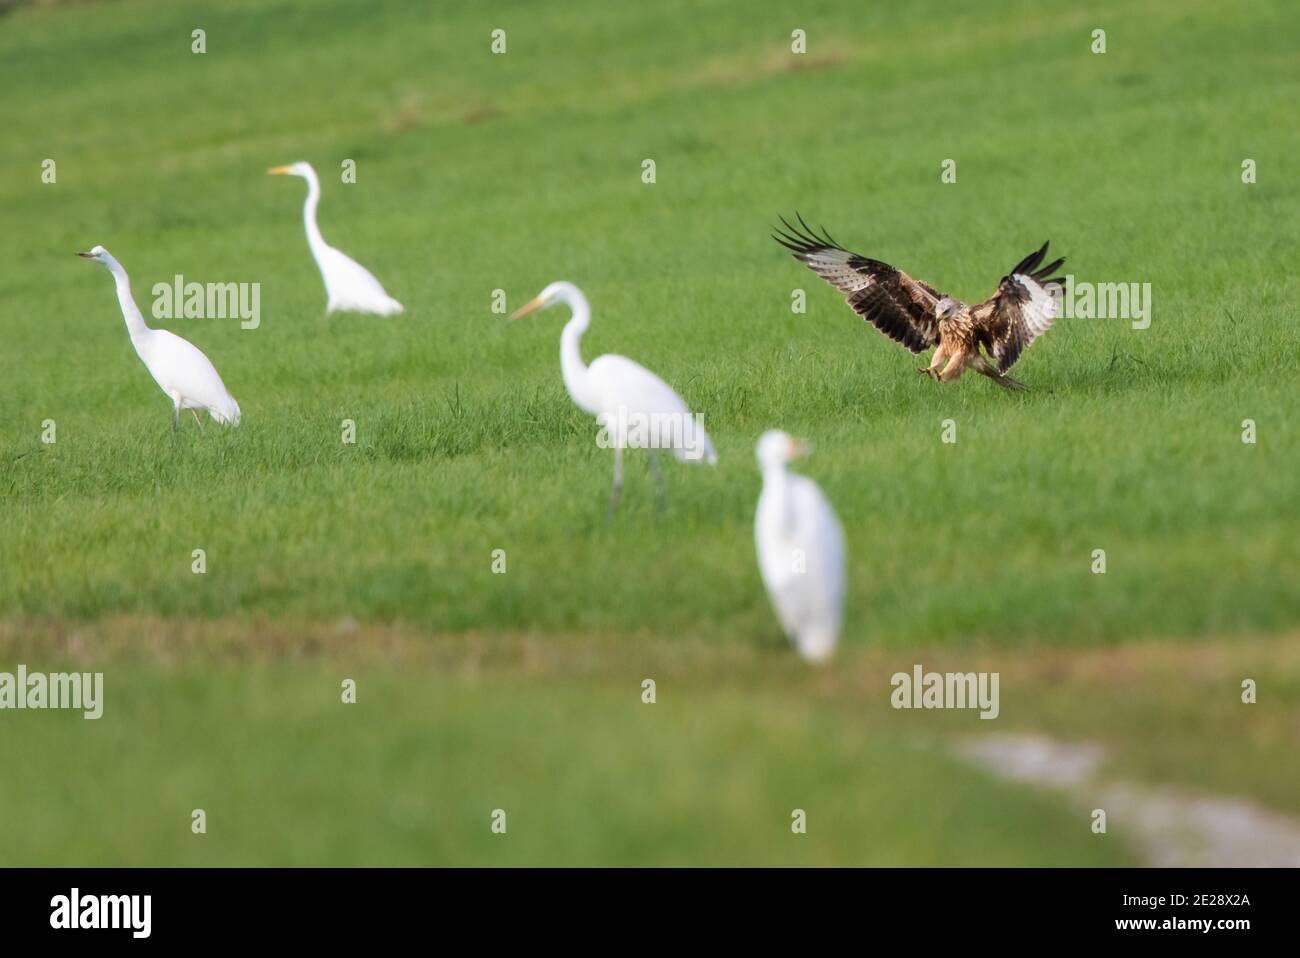 Cerf-volant (Milvus milvus), atterrissage entre souris de chasse aux aigrettes, Allemagne, Bavière Banque D'Images